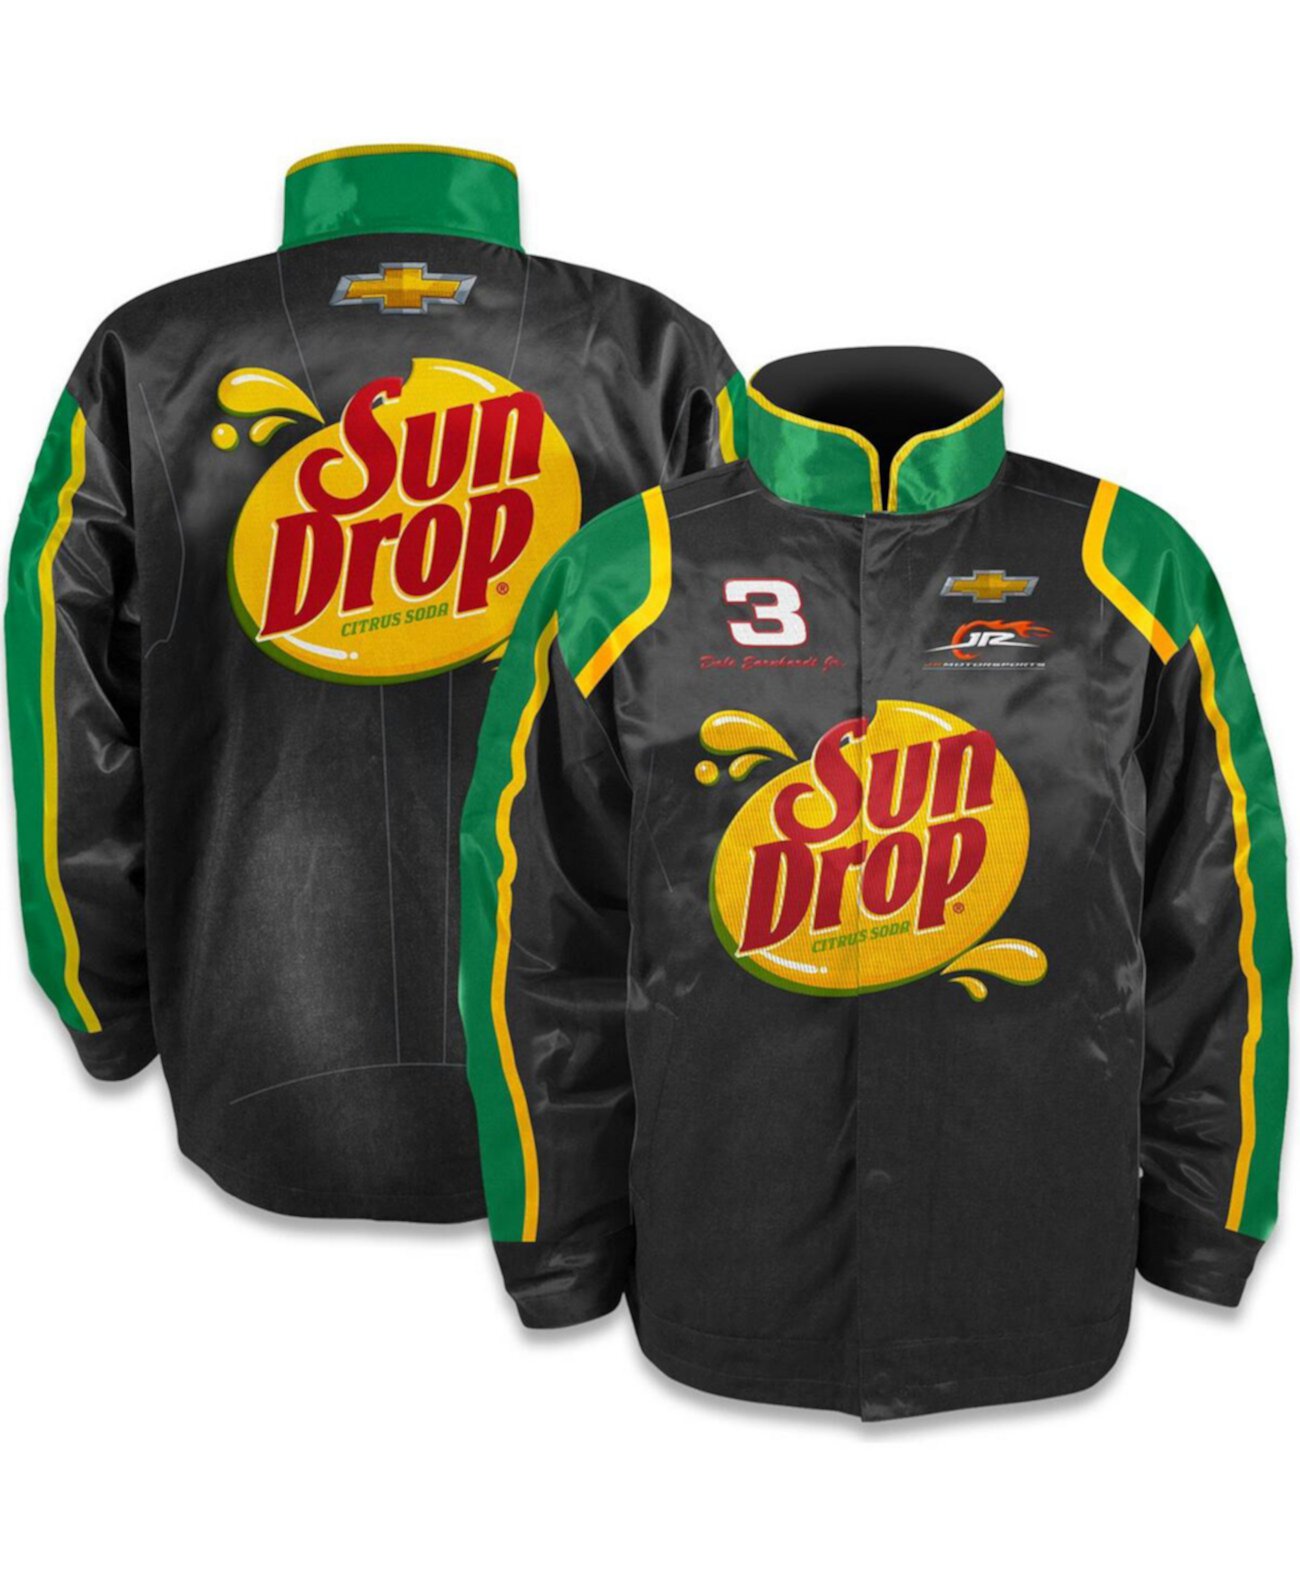 Мужская черная нейлоновая униформа с длинными кнопками Dale Earnhardt Jr. Sun Drop JR Motorsports Official Team Apparel